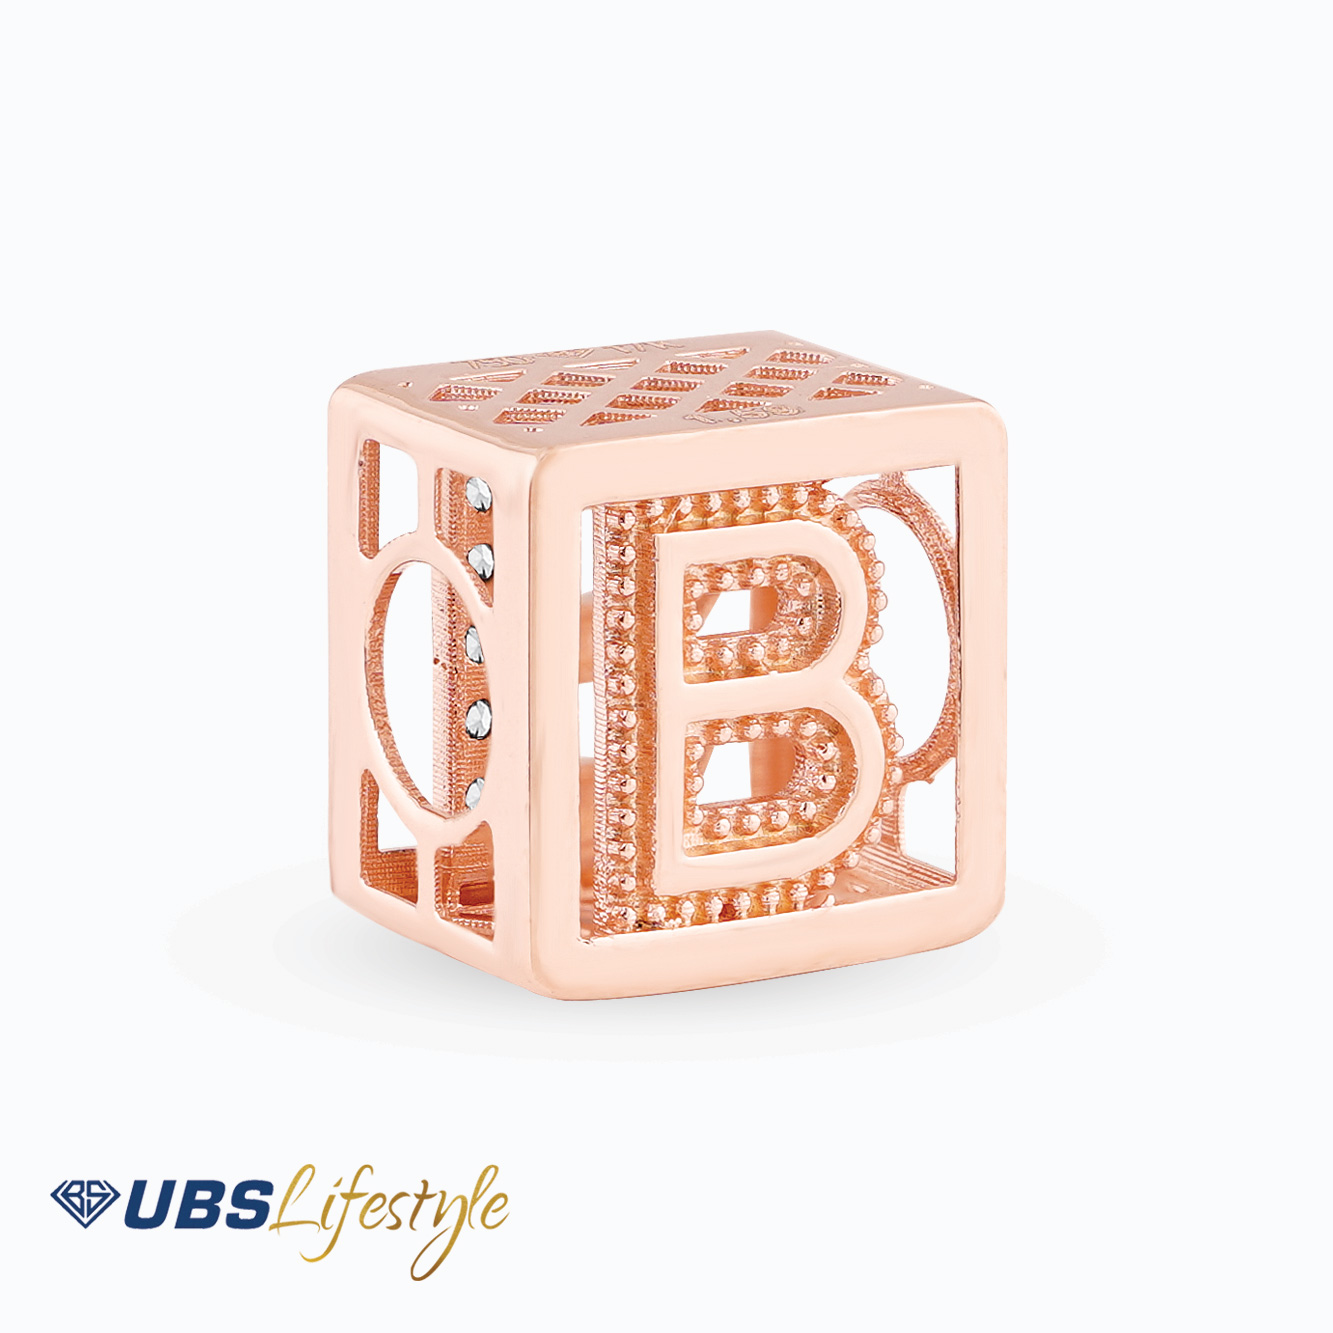 UBS Liontin Emas Carendelano Alpha Cube B - Cdm0142R - 17K